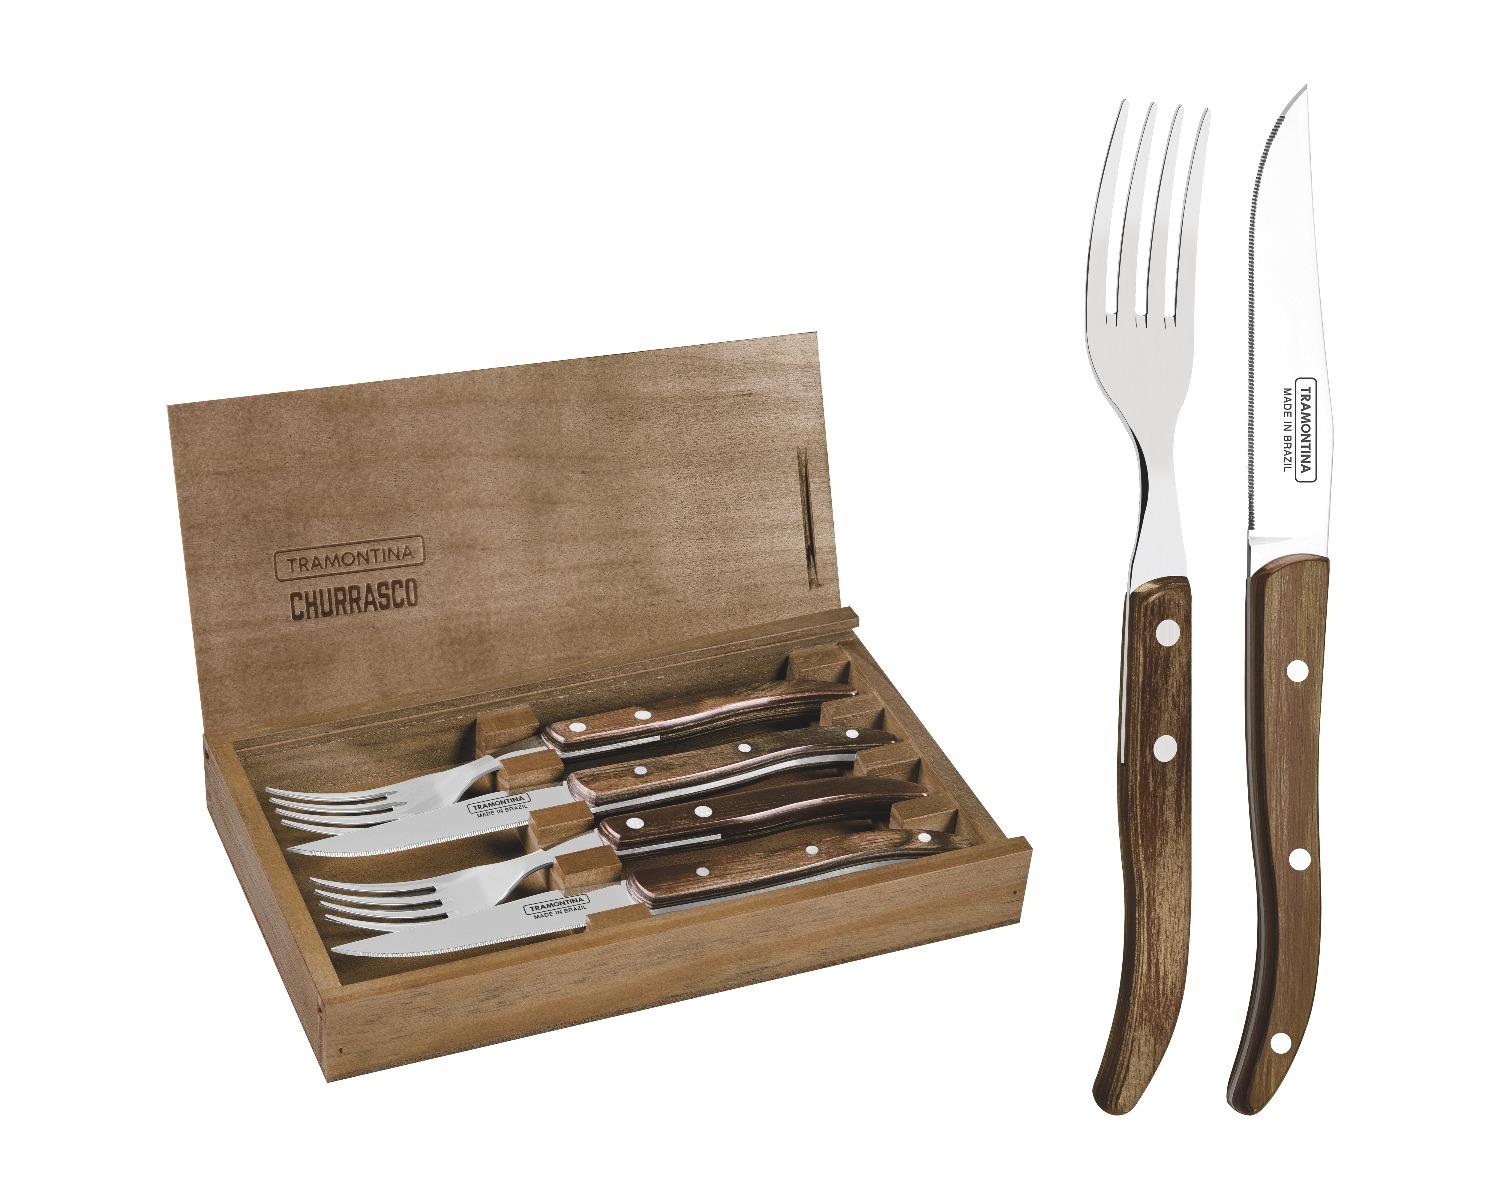 طقم ادوات مائدة (شوك وسكاكين) بمقبض خشبي حزمة 4في1 ترامونتينا Tramontina Cutlery Set with Wooden Box